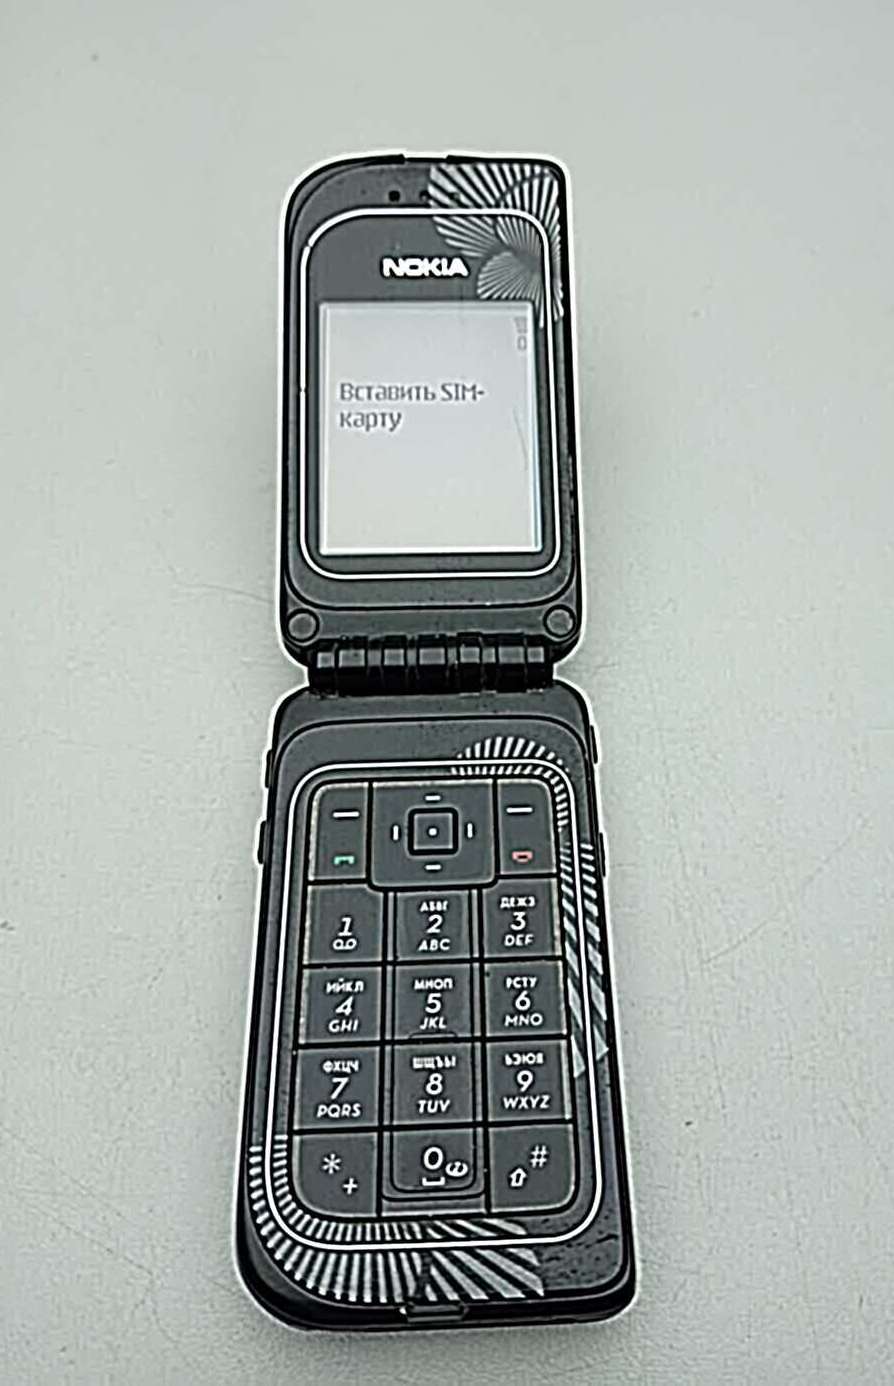 Nokia 7270 6